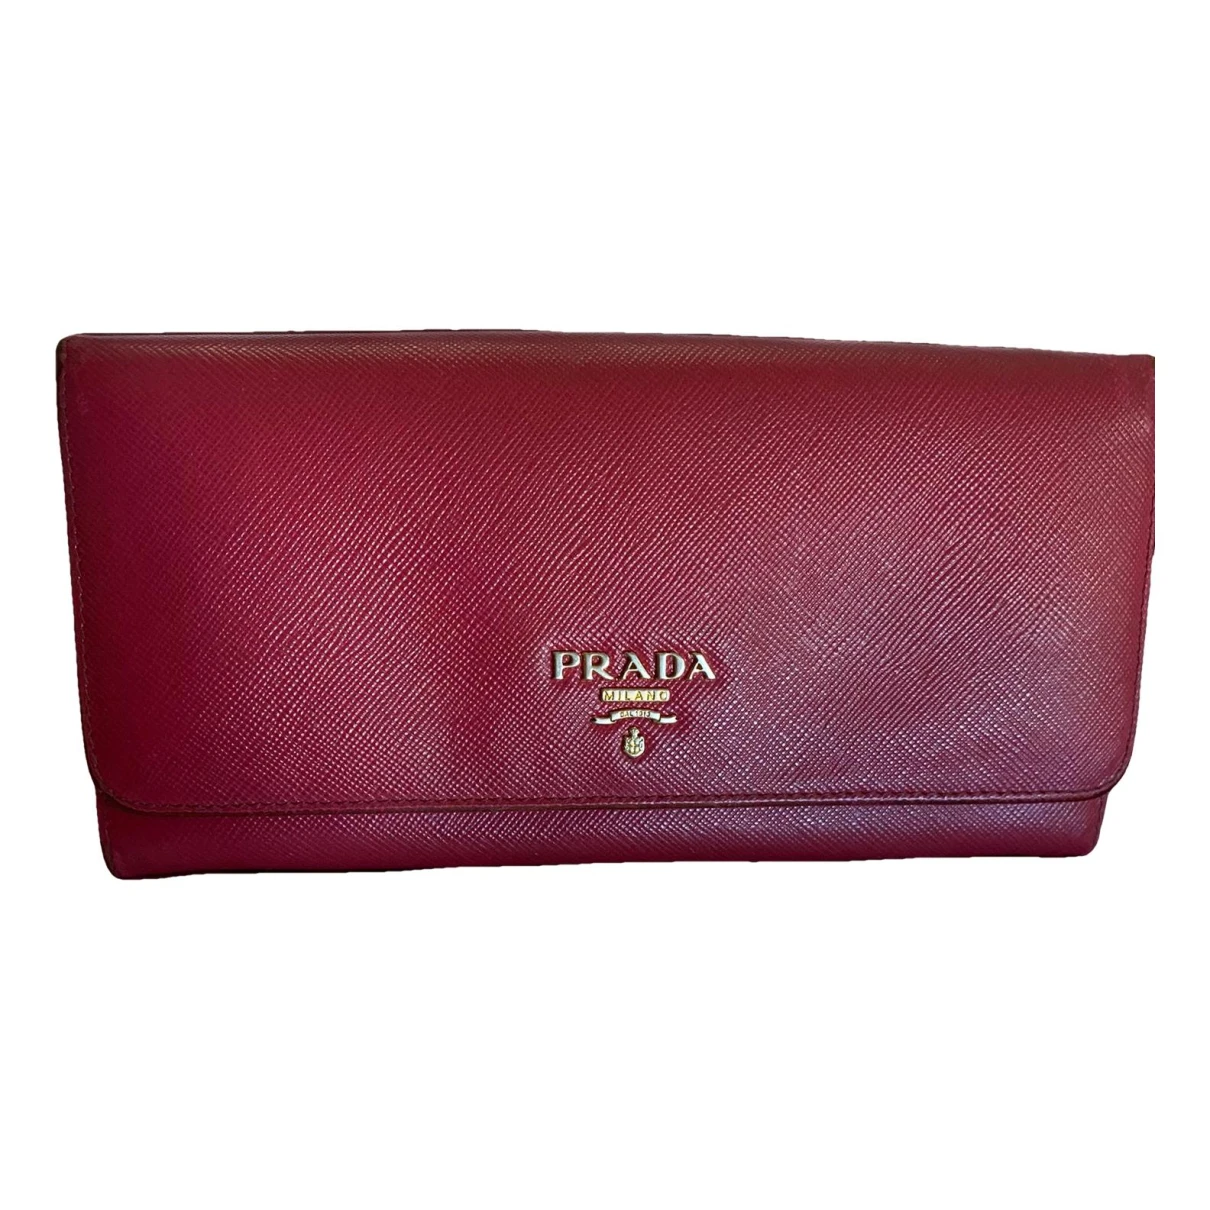 Pre-owned Prada Leather Wallet In Burgundy